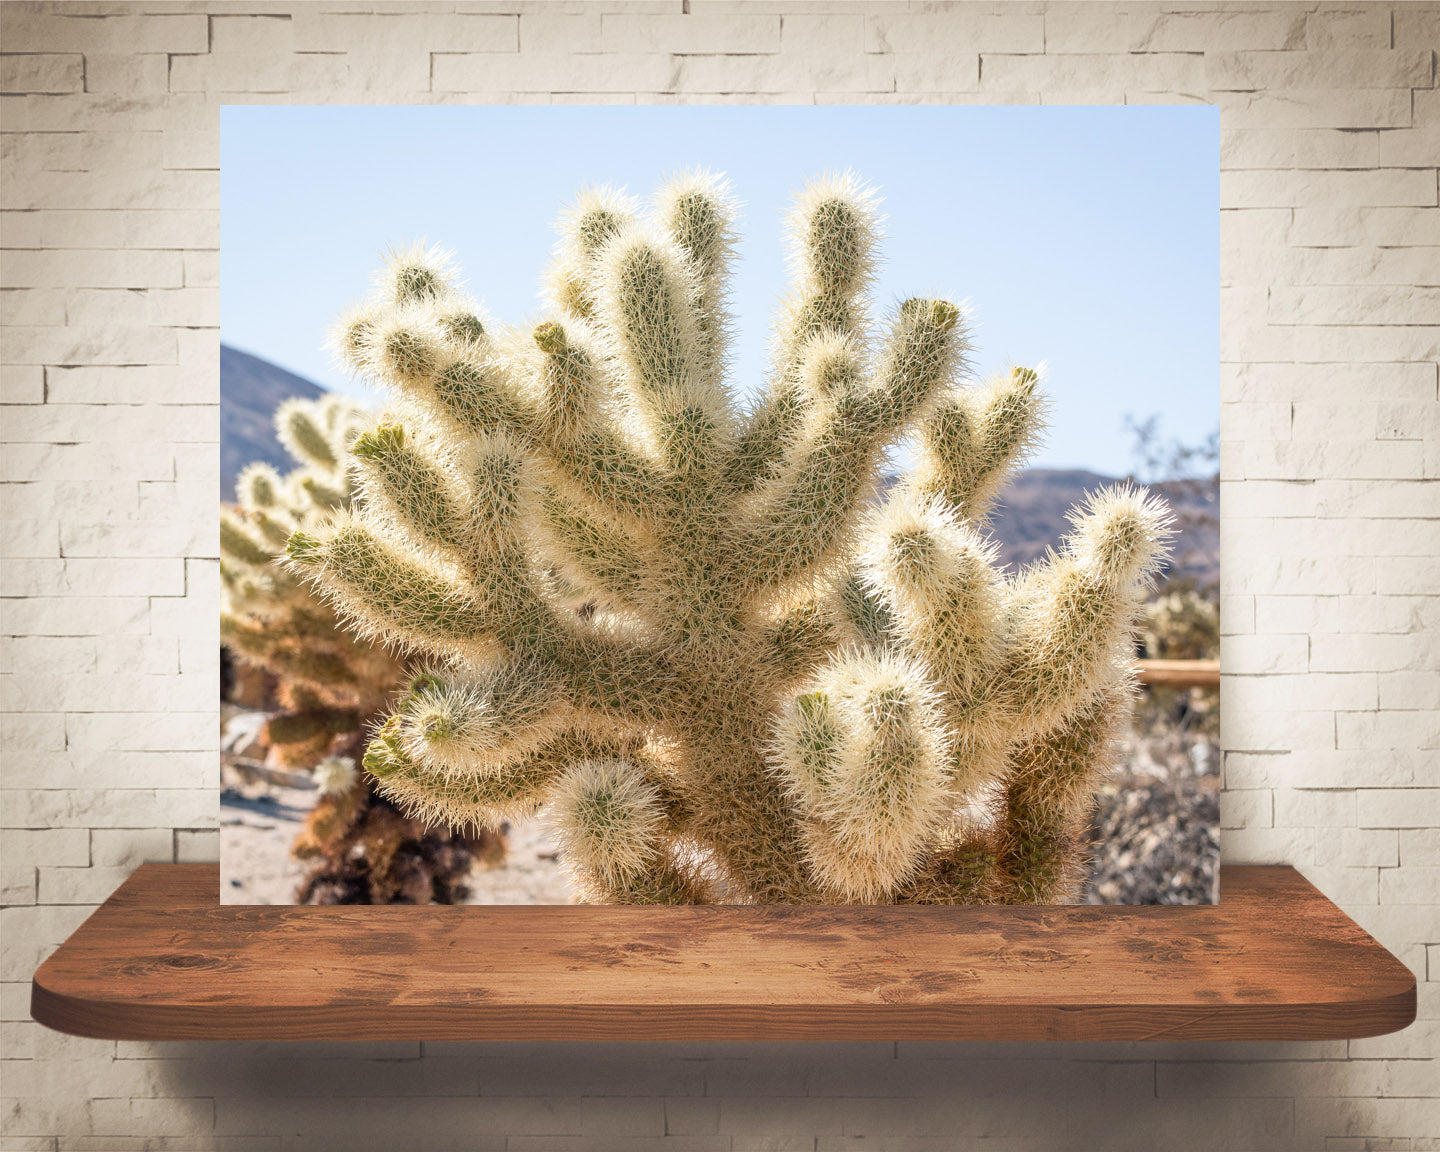 Teddy Bear Cholla Cactus Photograph